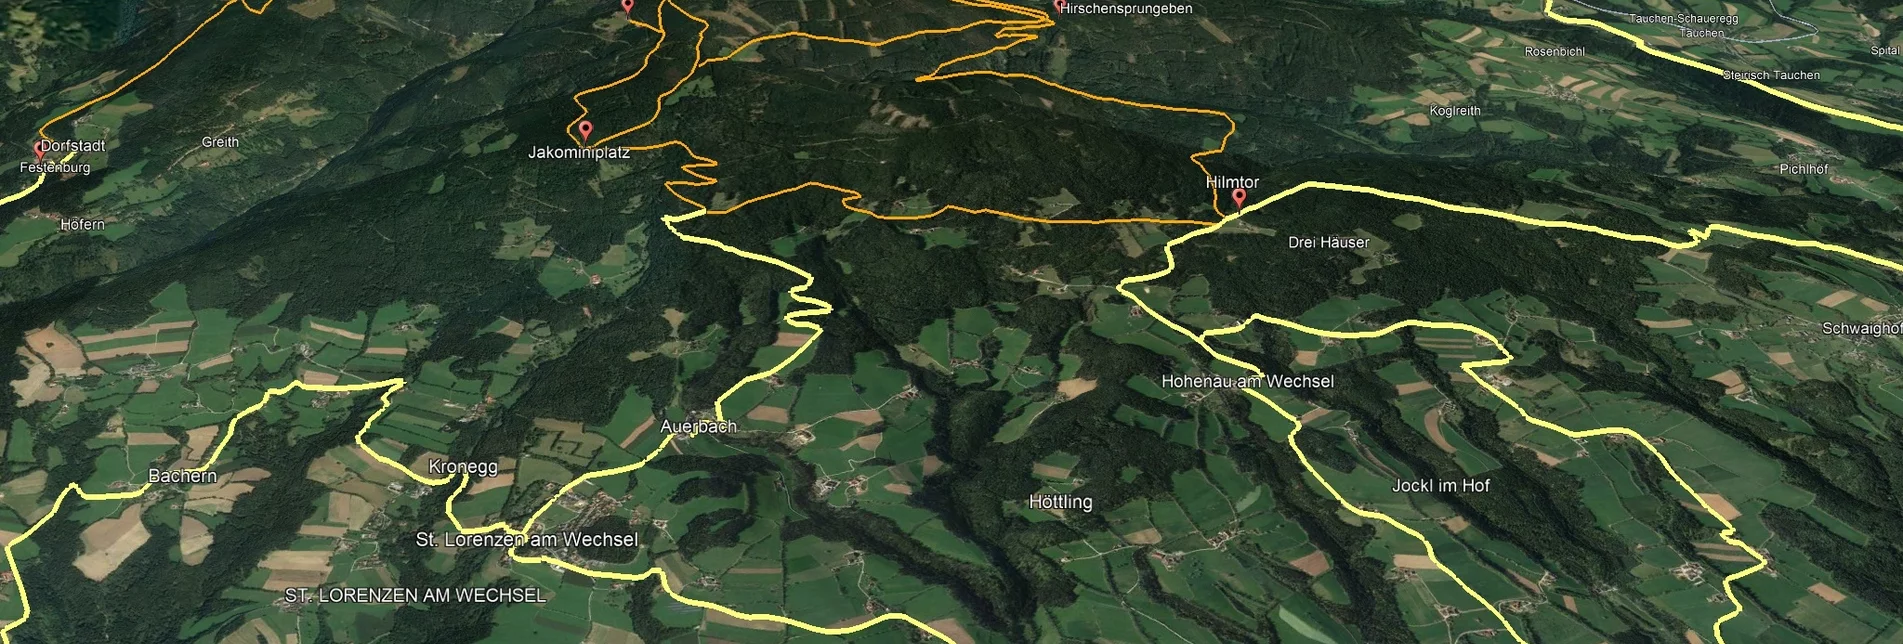 Mountain Biking PREVIEW Styrian Wexl Trails - feeder road Dechantskirchen to Thalberg (connection) - Touren-Impression #1 | © Verein Tourismusentwicklung Steirischer Wechsel